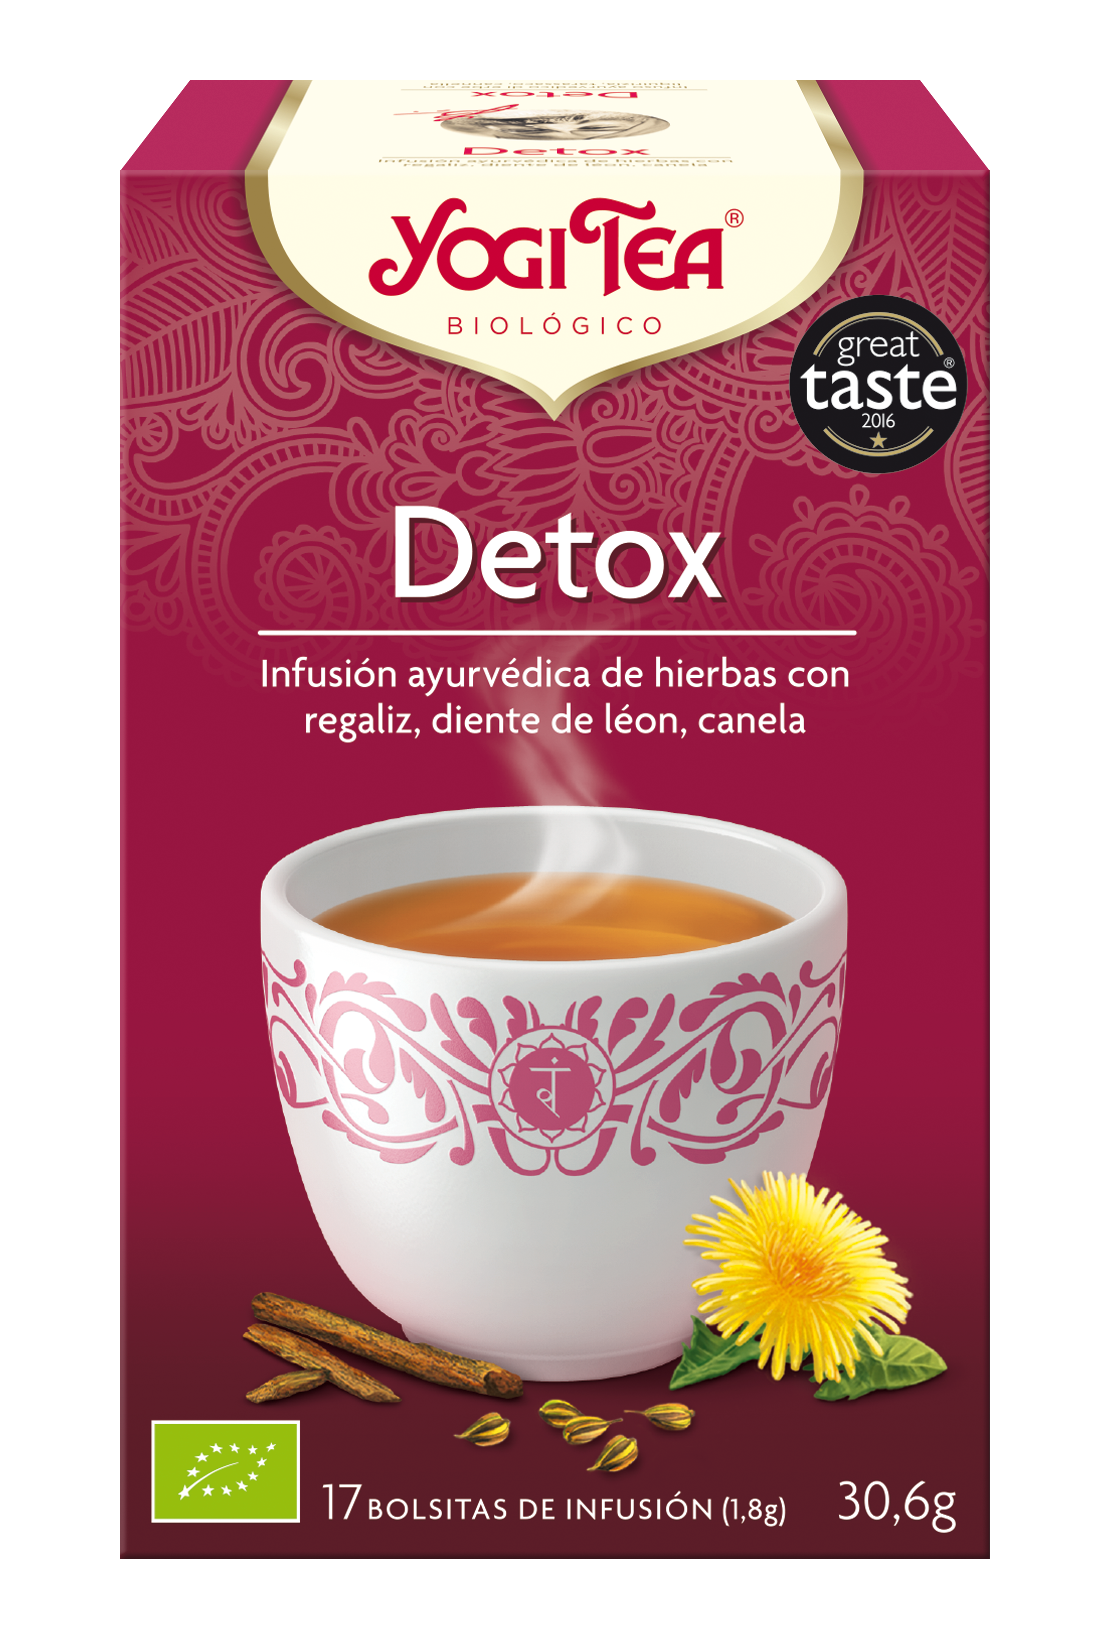 Yogi tea detox bio 17 bolsitas